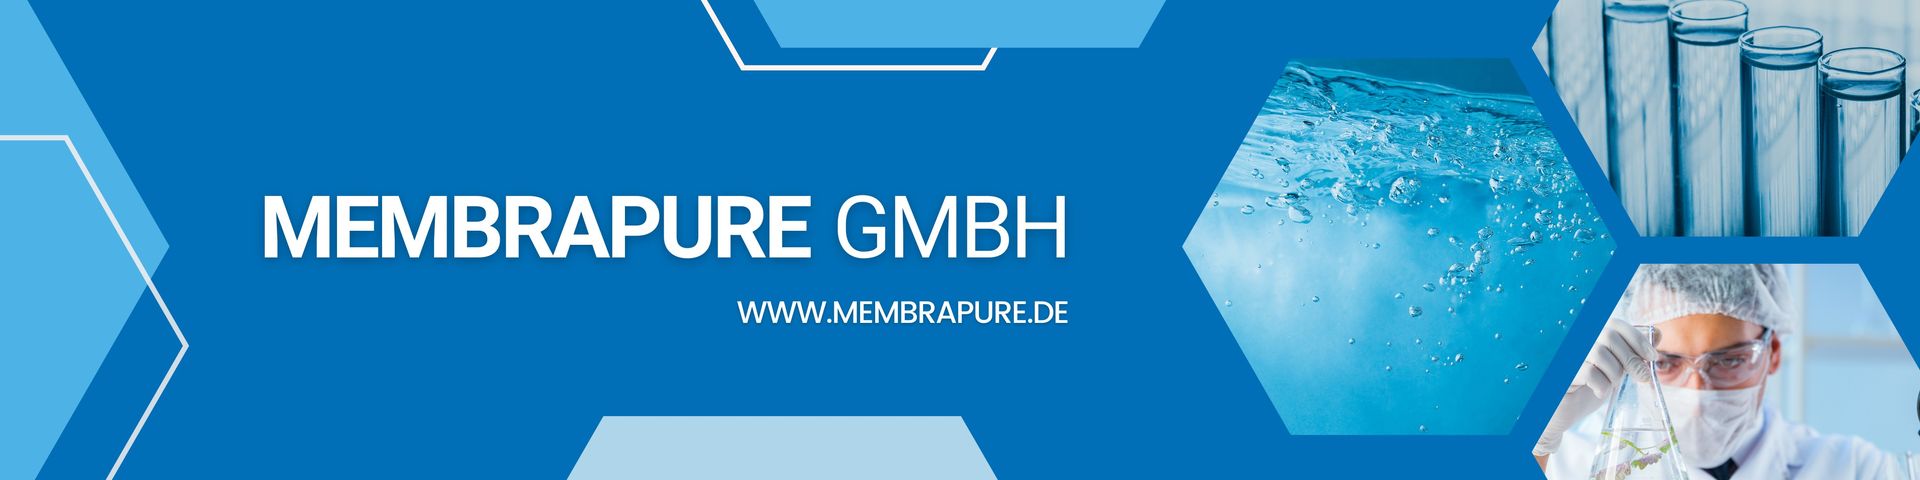 membraPure GmbH